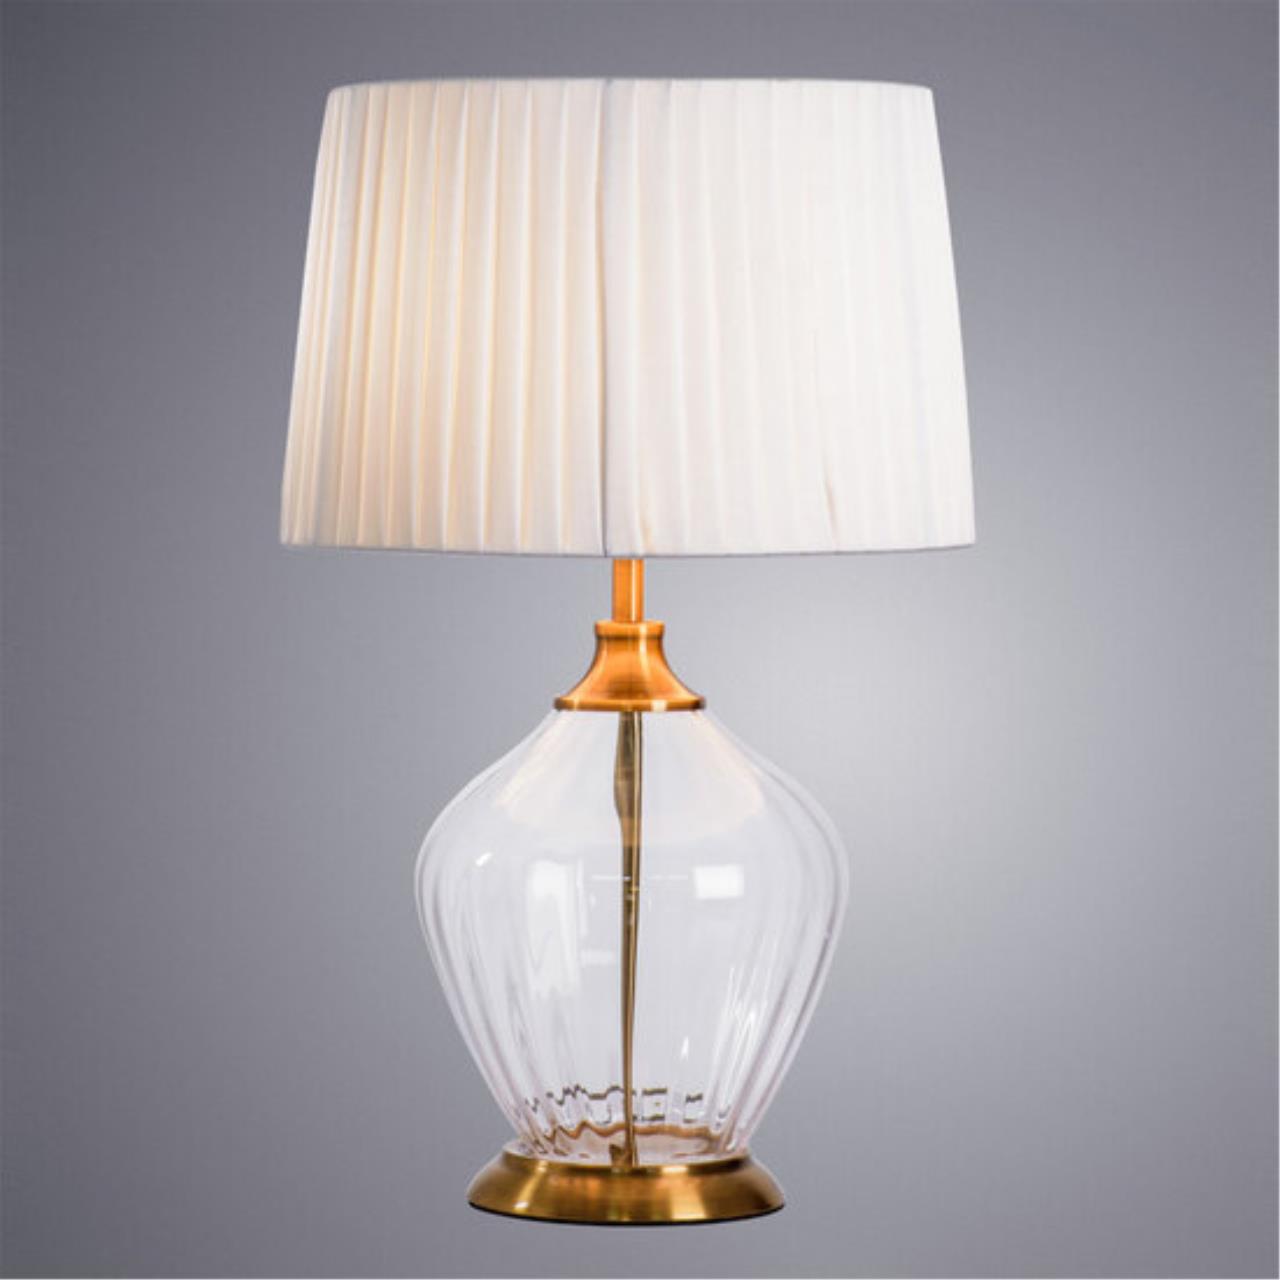 Интерьерная настольная лампа Arte lamp A5059LT-1PB